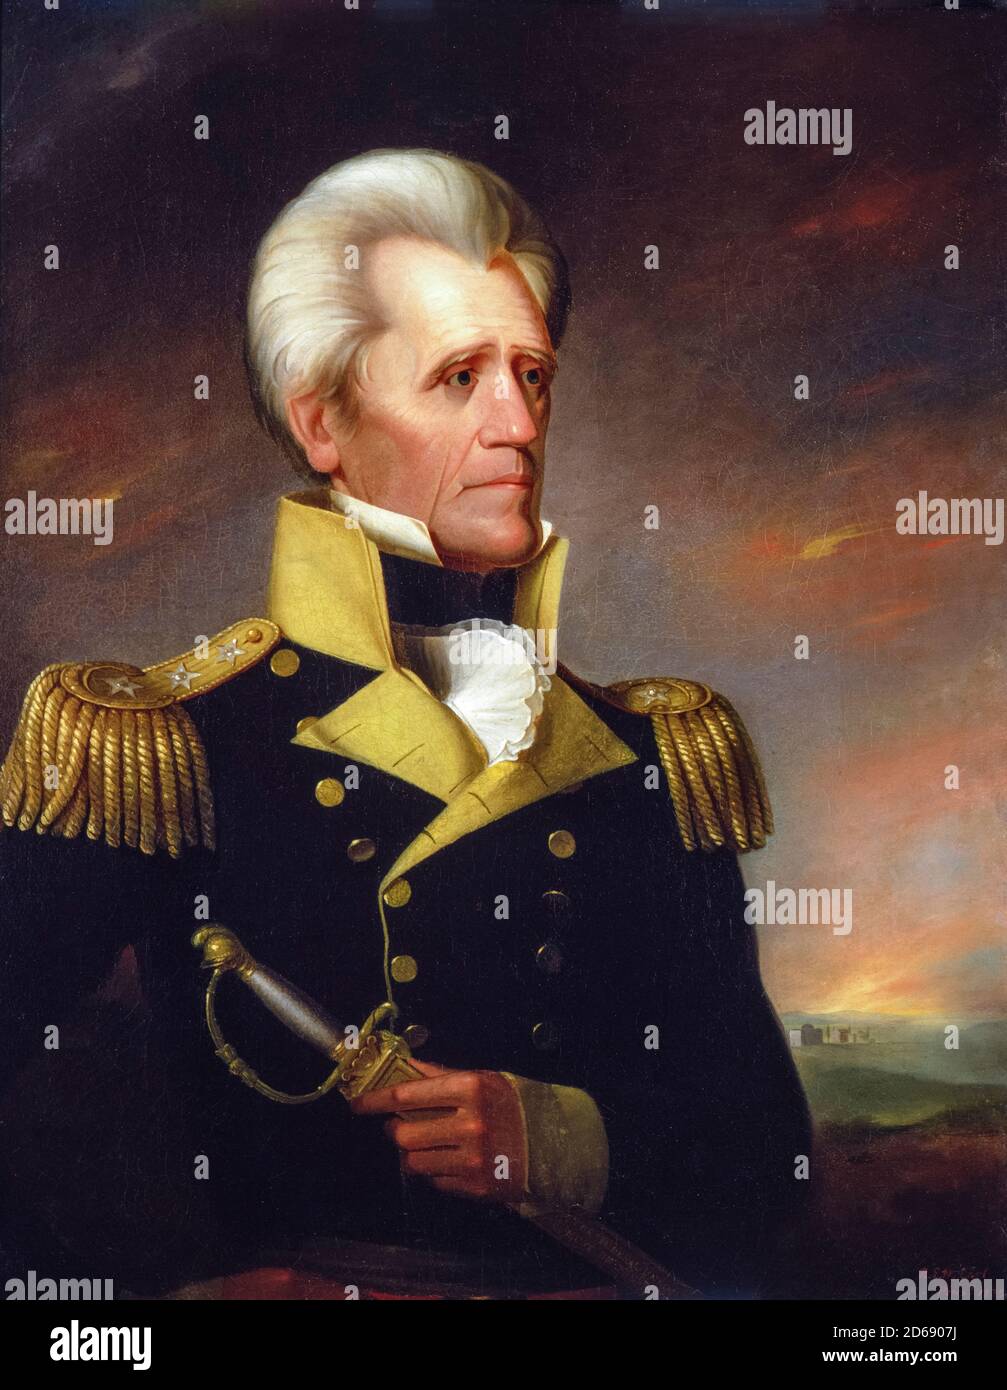 Andrew Jackson (1767-1845), soldato e statista americano che fu il settimo presidente degli Stati Uniti, dipingendo ritratto in uniforme militare di Ralph Eleaser Whiteside Earl, 1835 Foto Stock